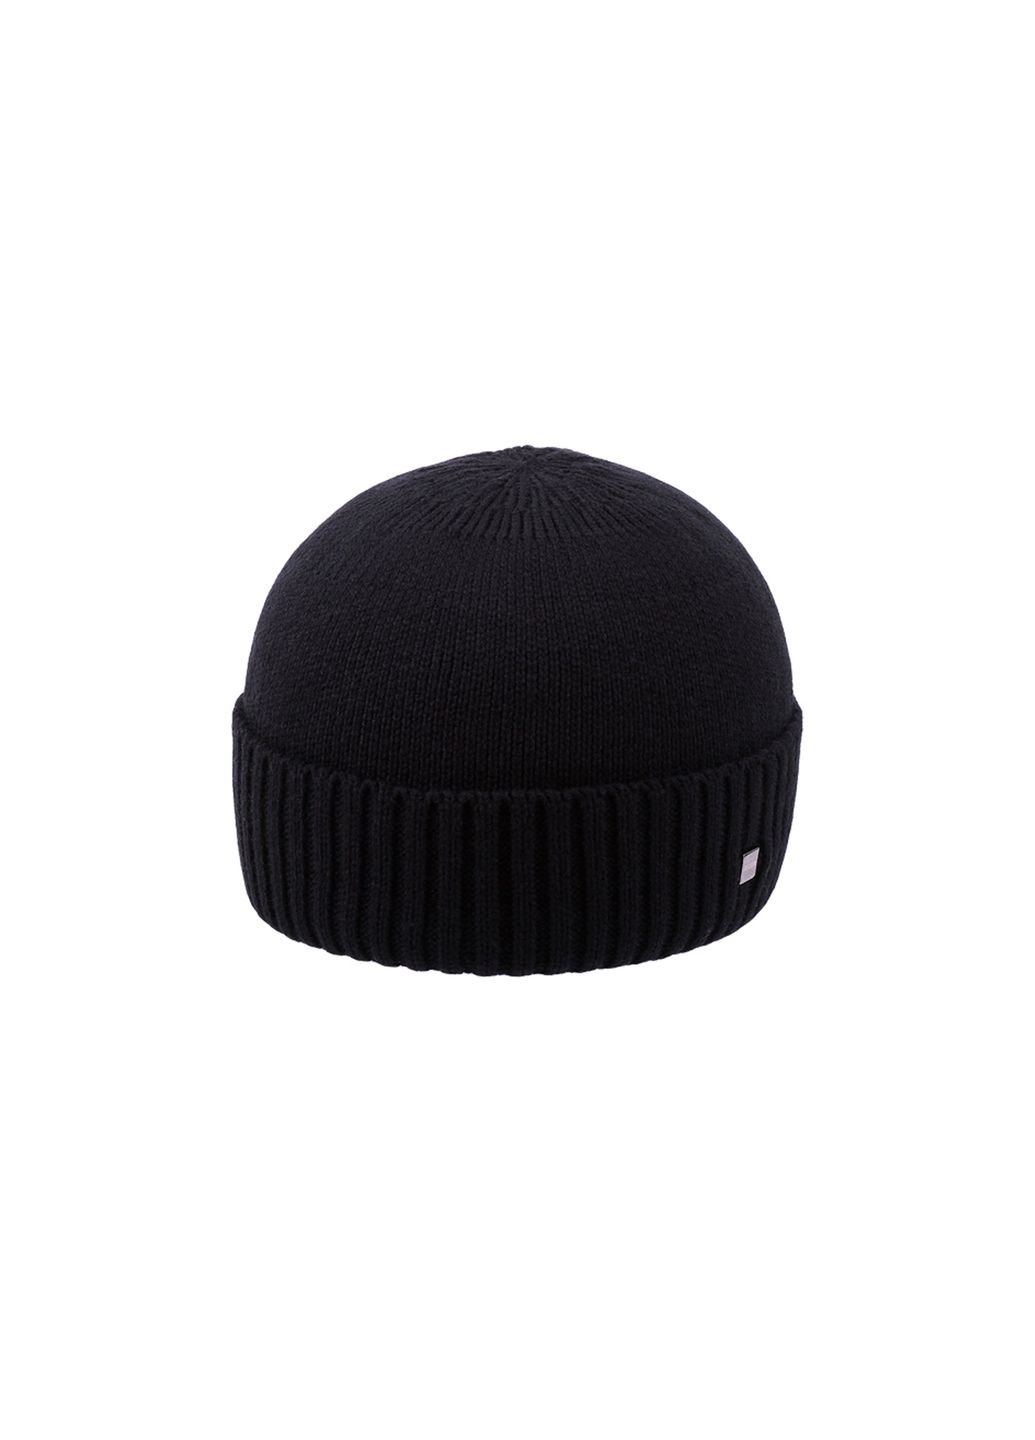 Купить Шерстяная шапка Berxon на флисовой подкладке 220004 - Черный в интернет-магазине